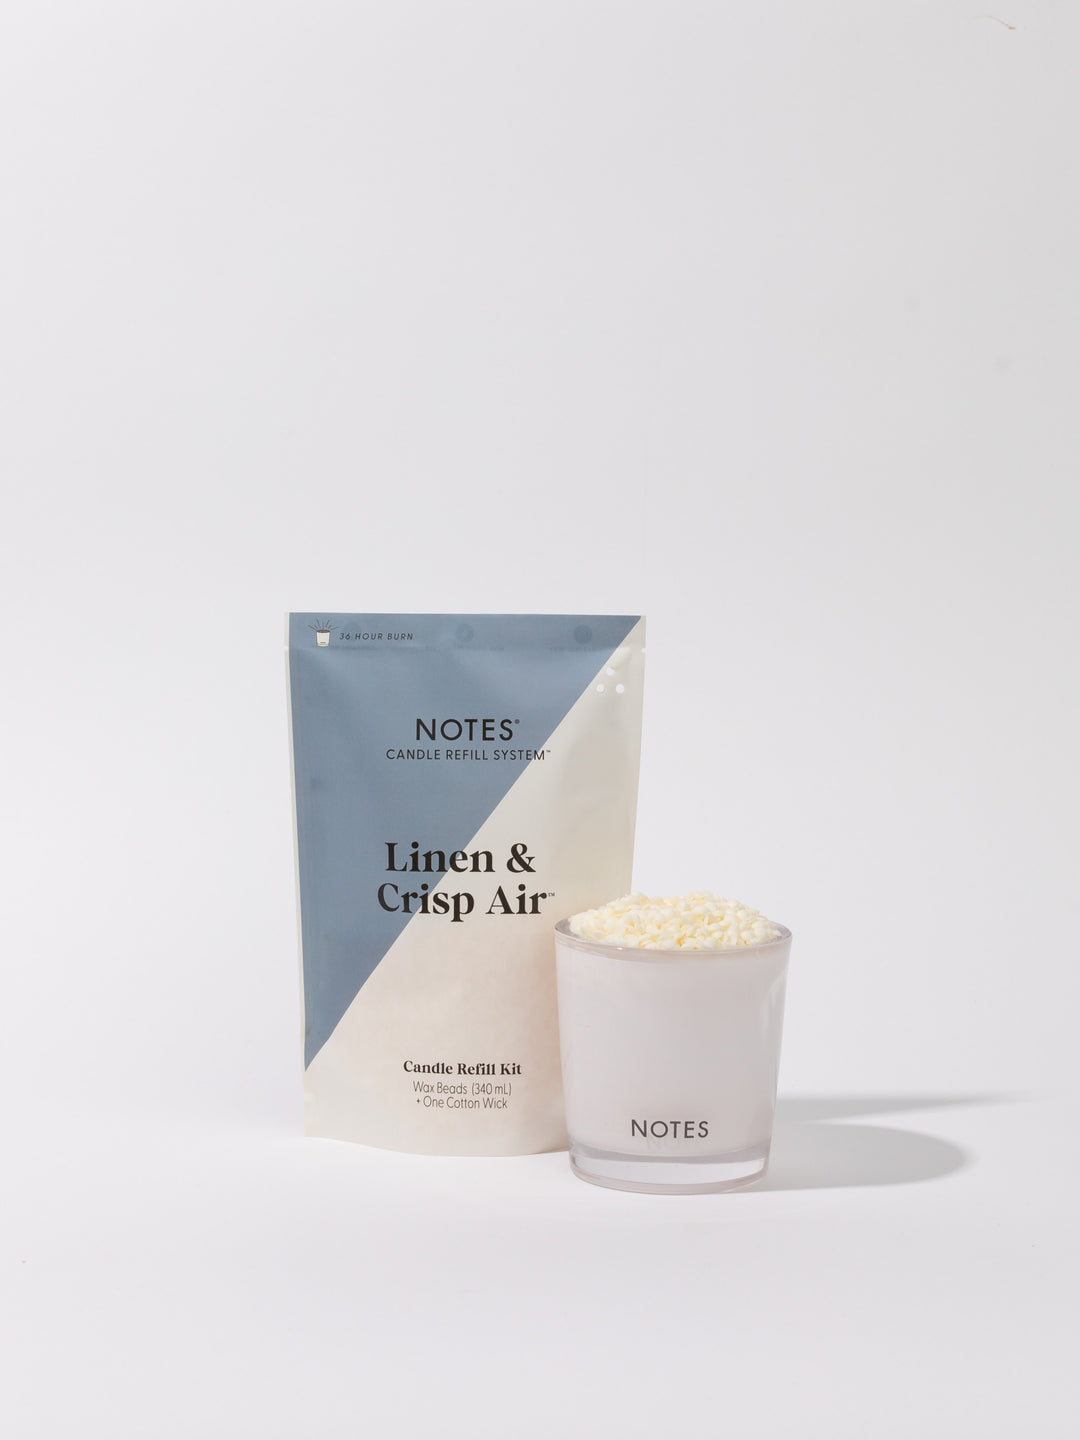 Notes Candle Refill Kits- Linen & Crisp Air